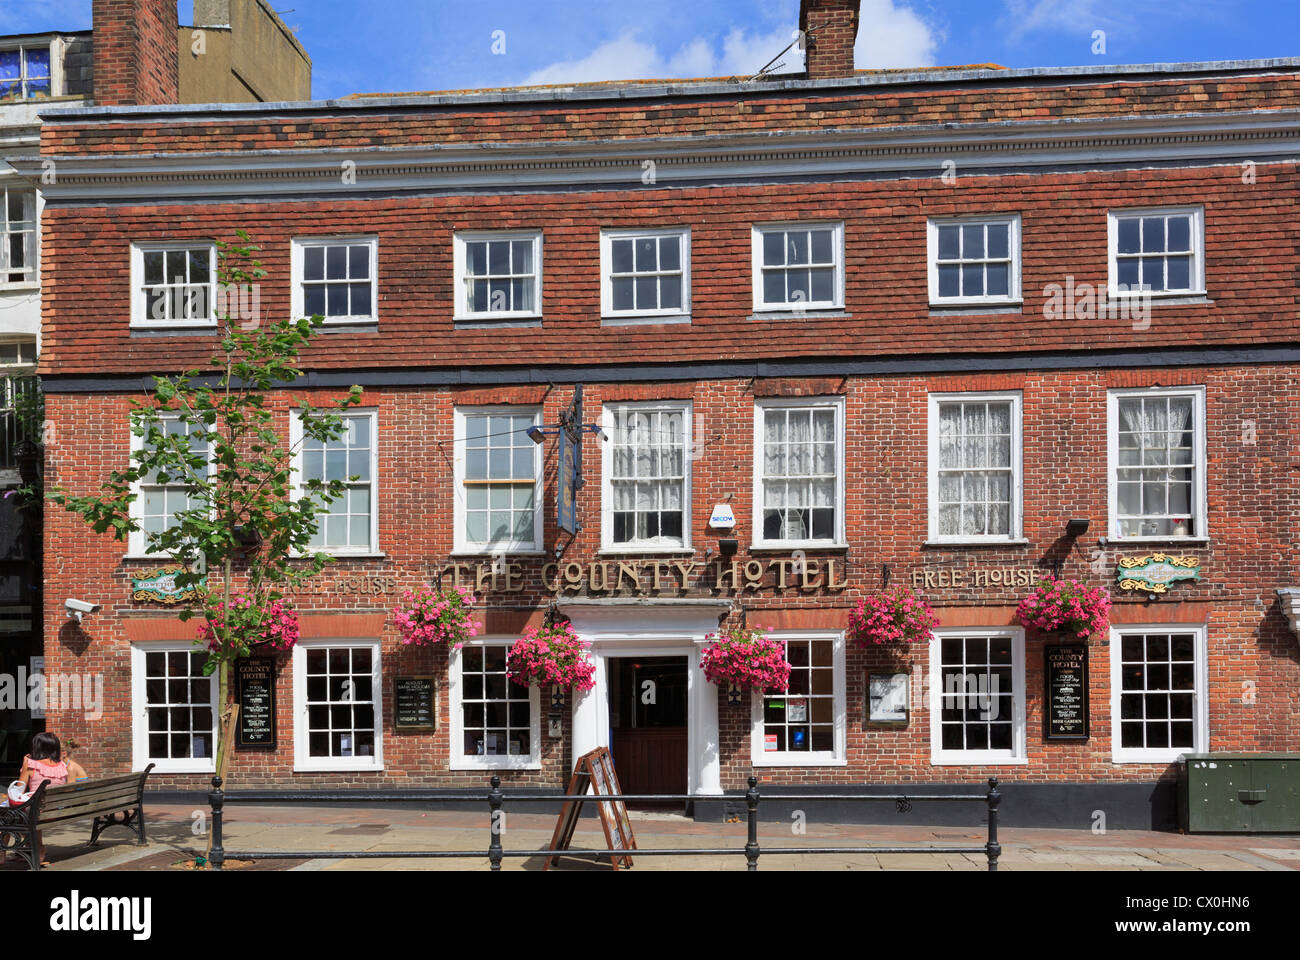 Gasthaus frei Haus Pub im ehemaligen Landkreis Hotelgebäude im Zentrum der Stadtzentrums von Ashford, Kent, England, UK, Großbritannien Stockfoto